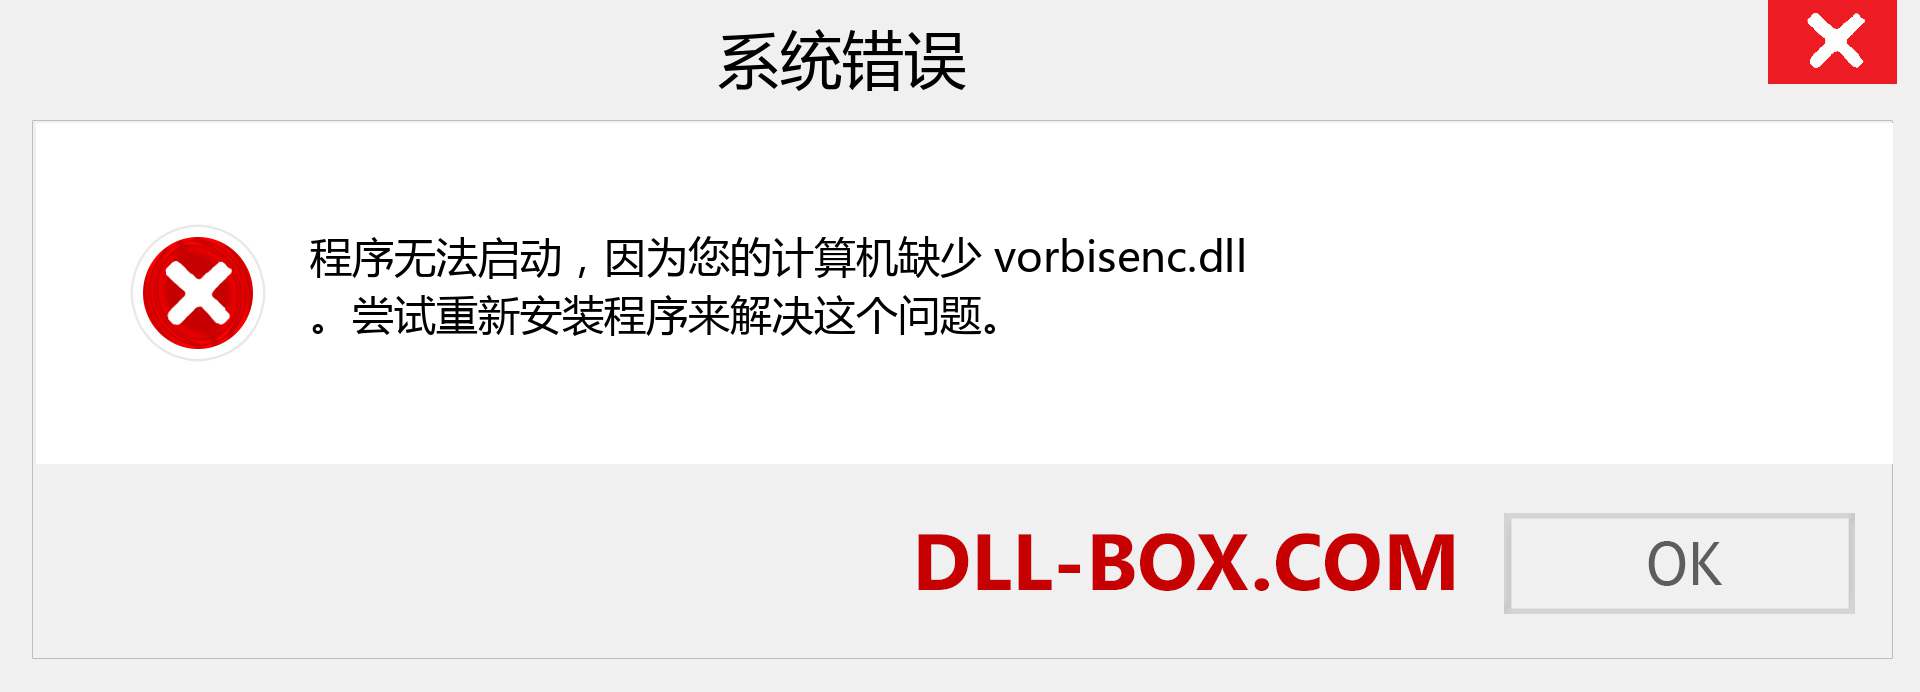 vorbisenc.dll 文件丢失？。 适用于 Windows 7、8、10 的下载 - 修复 Windows、照片、图像上的 vorbisenc dll 丢失错误